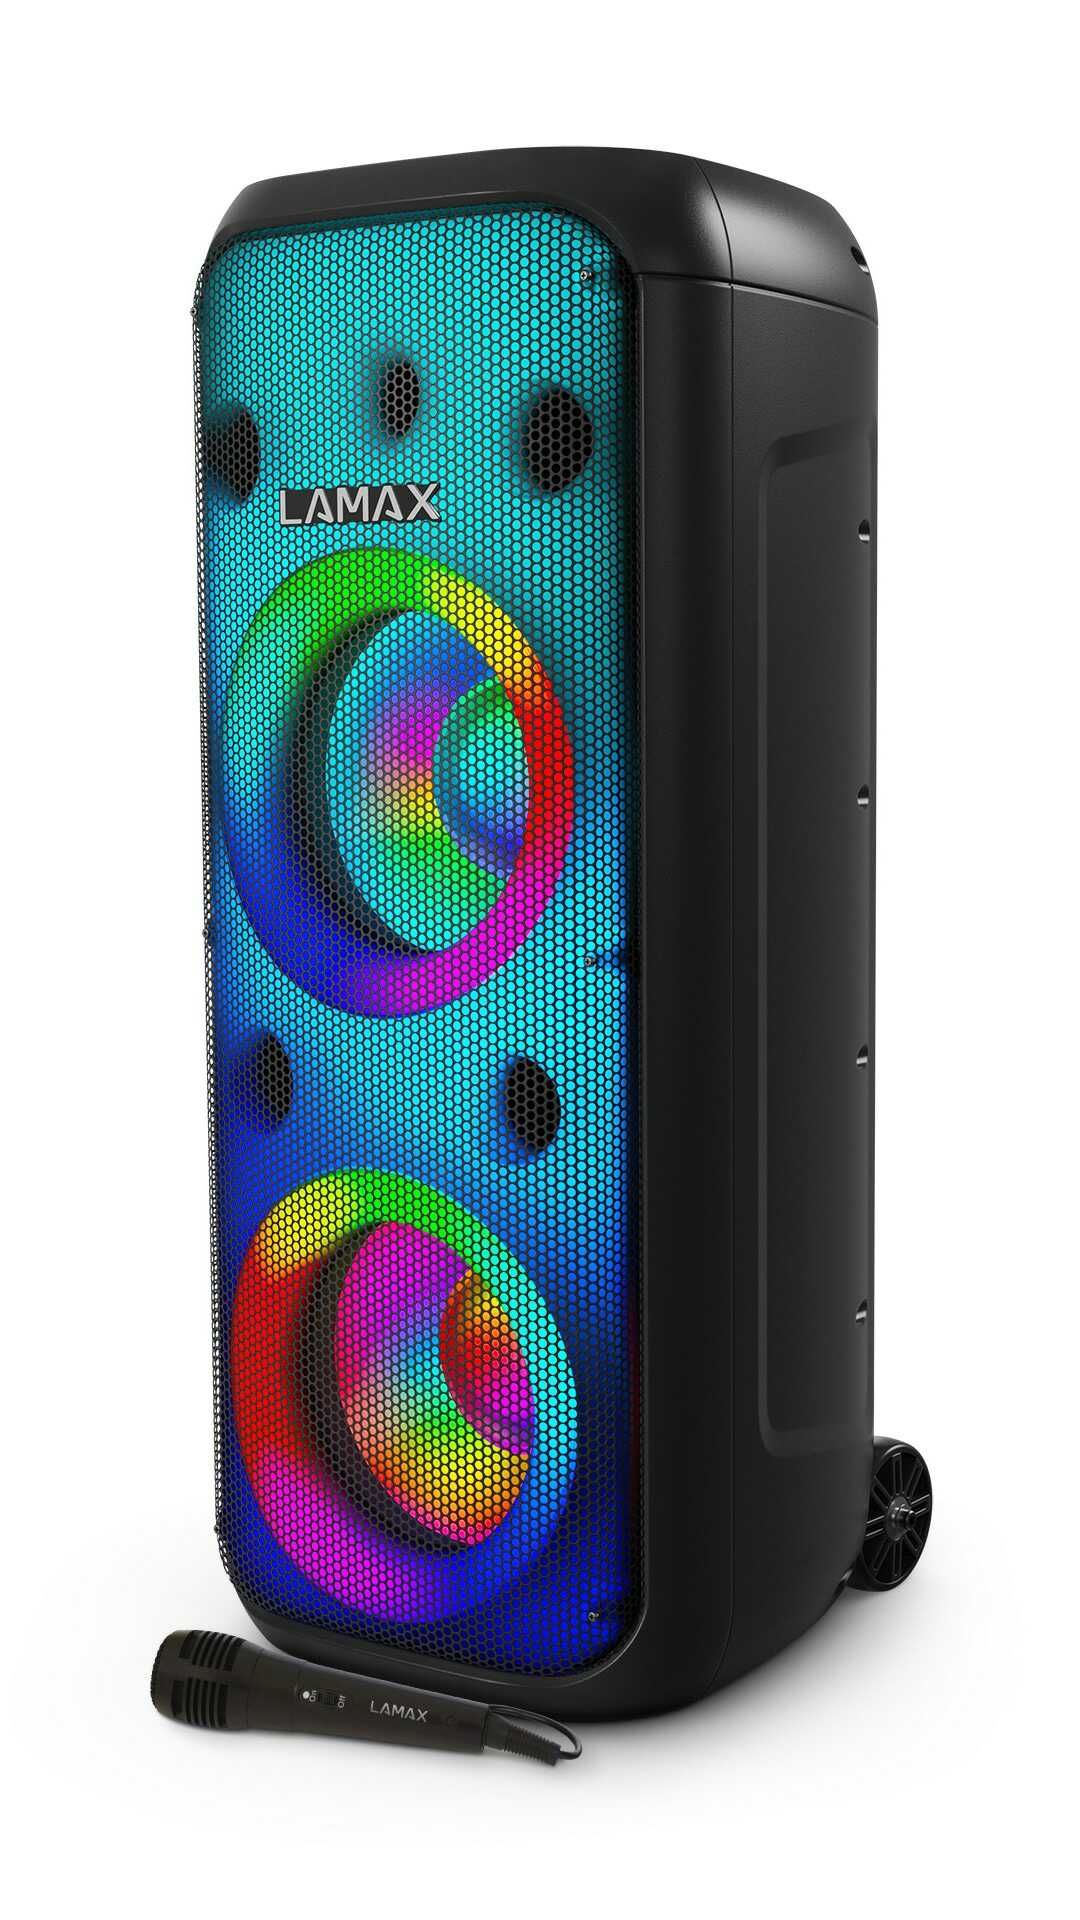  partyreproduktor lamax partyboombox 700 masívny hudobný výkon senzačný zvuk svetelná show batéria odolnosť vode usb sd slot karaoke